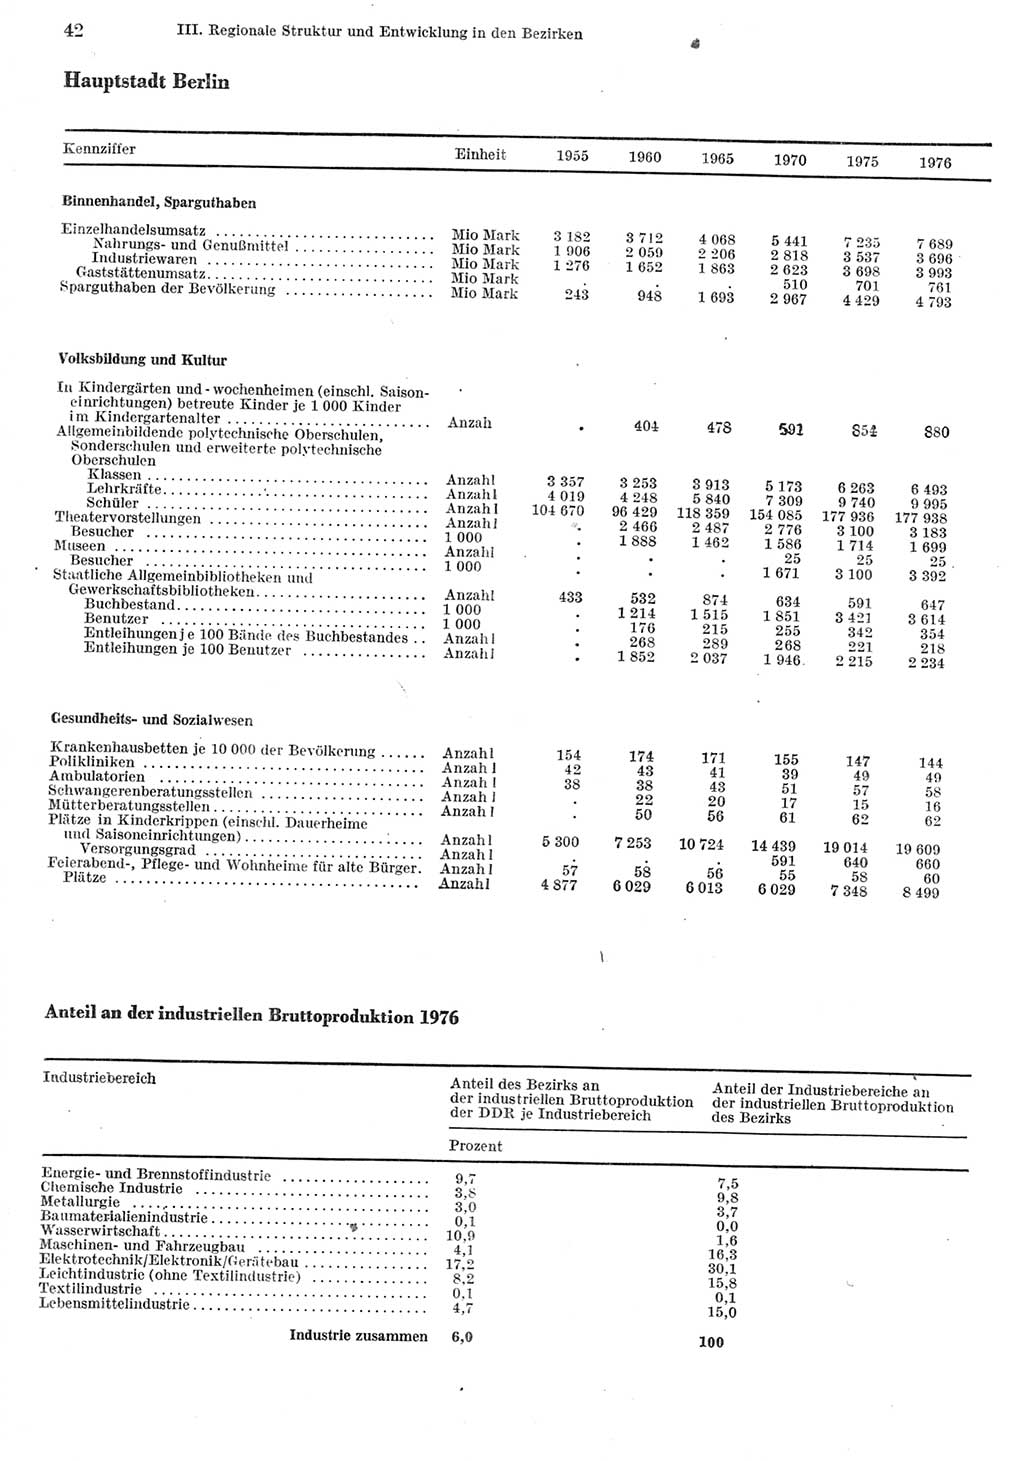 Statistisches Jahrbuch der Deutschen Demokratischen Republik (DDR) 1977, Seite 42 (Stat. Jb. DDR 1977, S. 42)